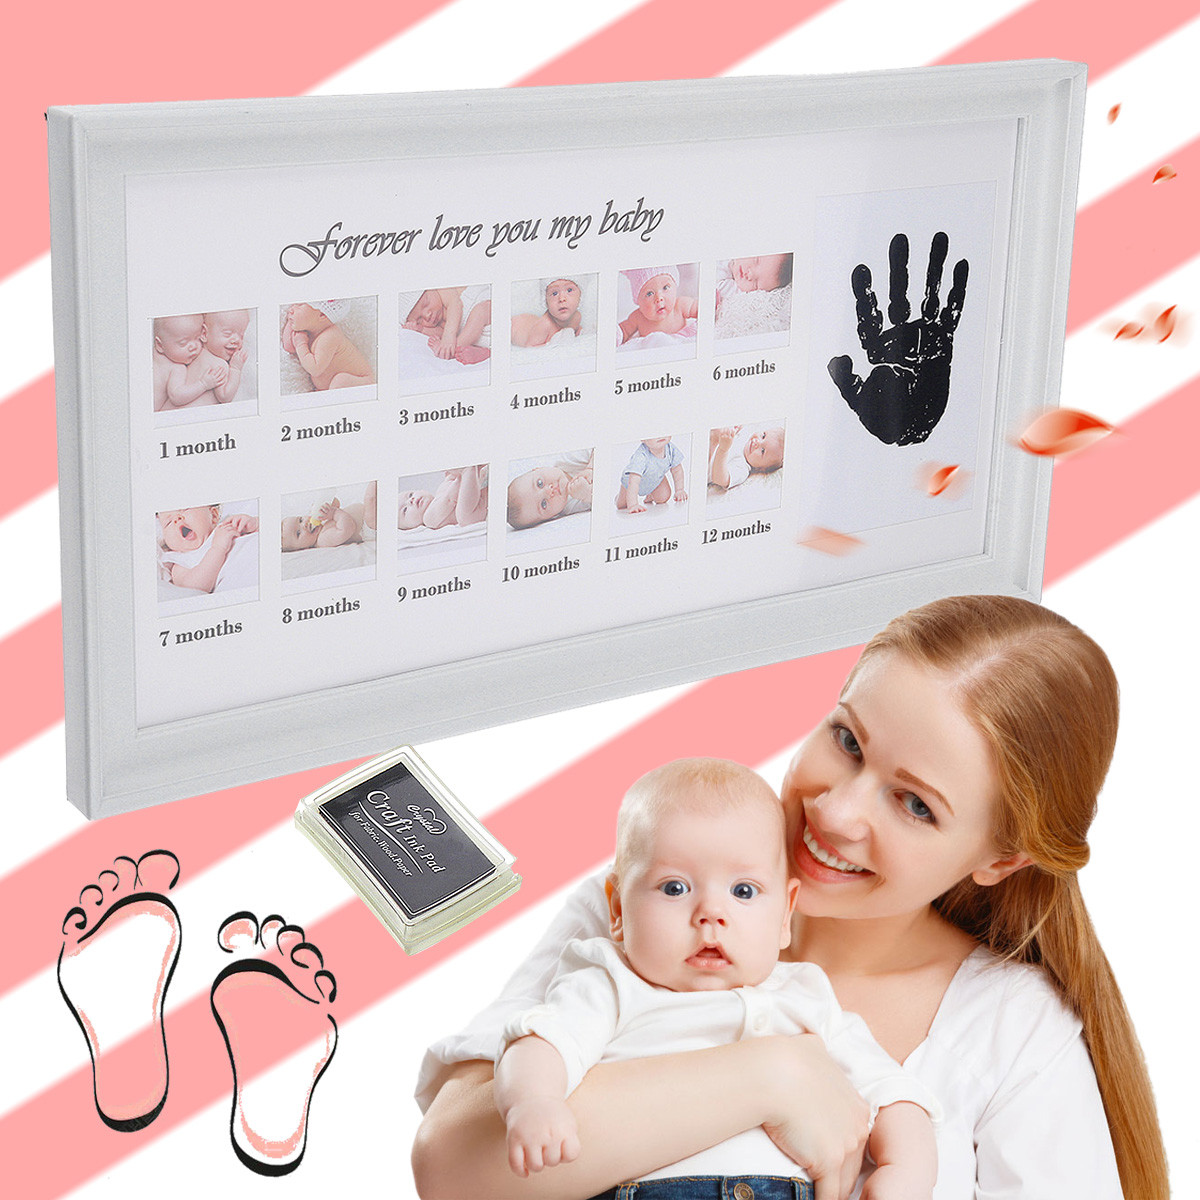 Diy Baby Footprint Ink
 Cute Baby frame DIY handprint or footprint 12 Months